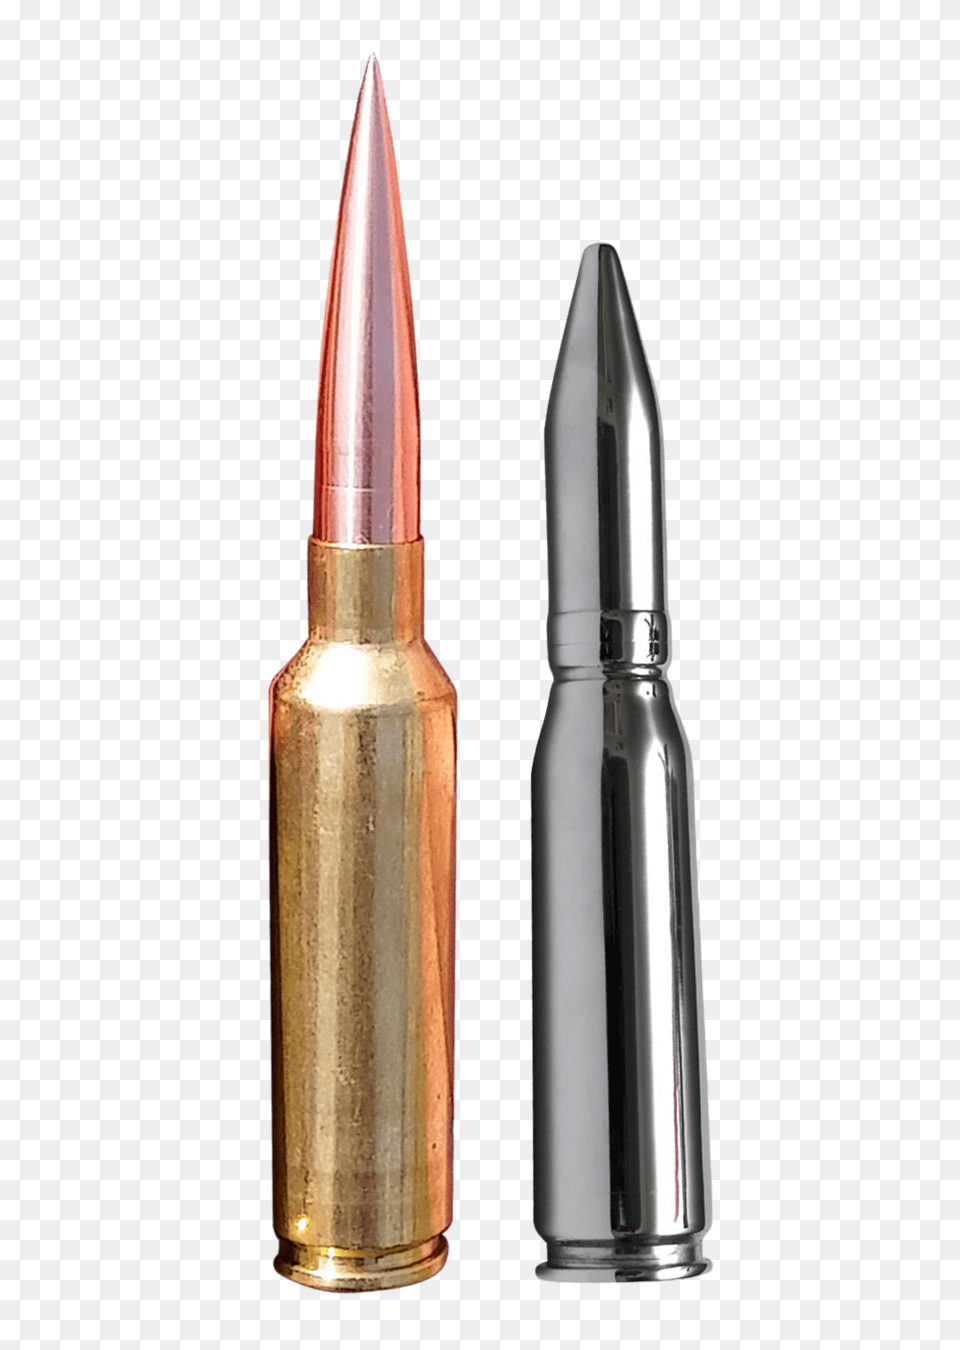 Pngpix Com Bullet Image, Ammunition, Weapon Free Transparent Png